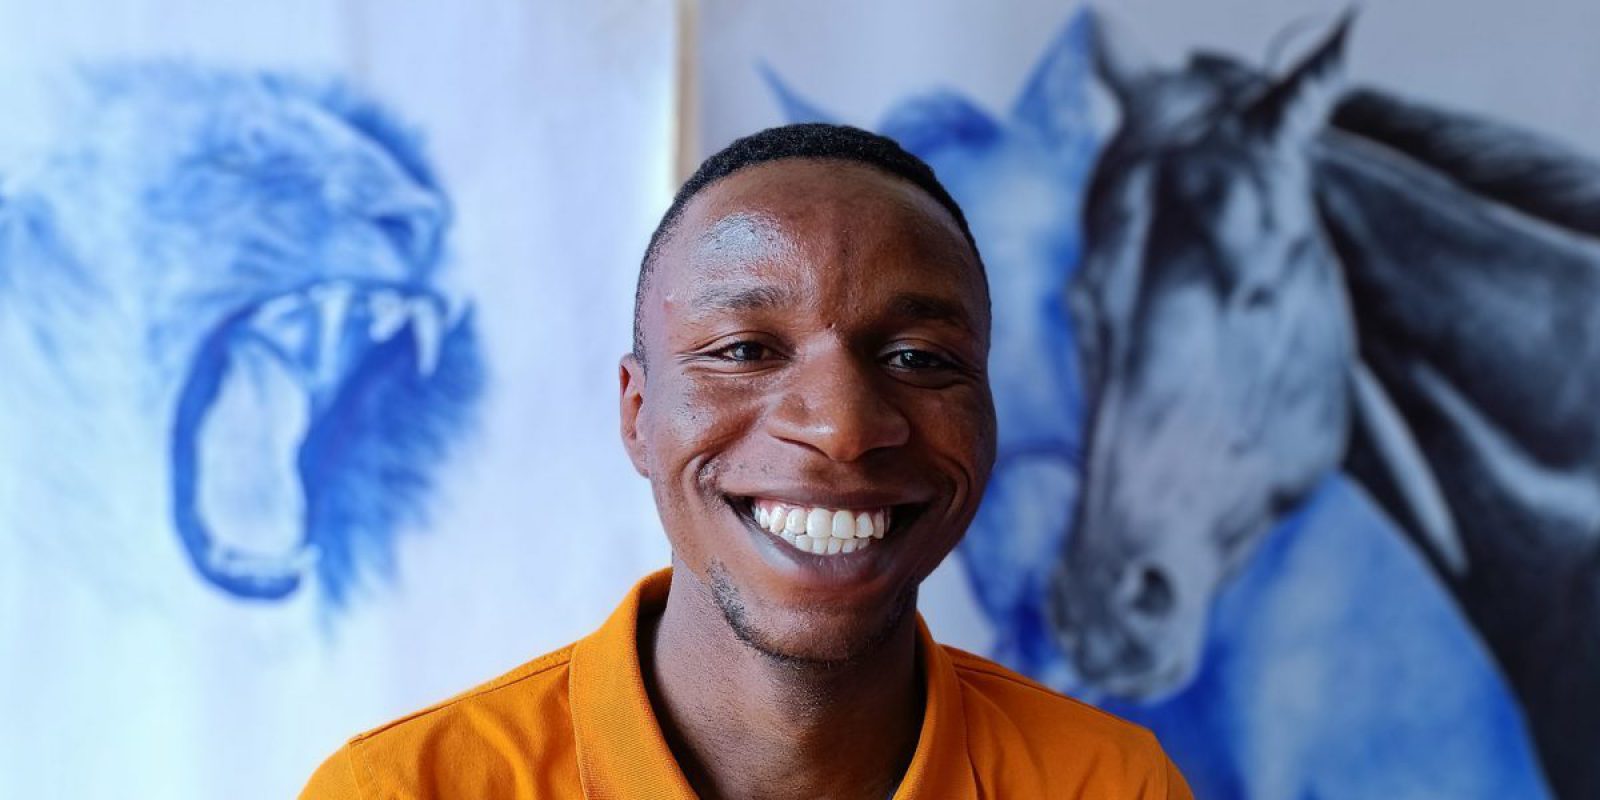 Serge, réfugié et dessinateur, pose avec ses dessins. Serge est un réfugié et un artiste qui dessine son avenir avec sa plume en Ouganda où il a été parrainé par le JRS pour poursuivre ses études.